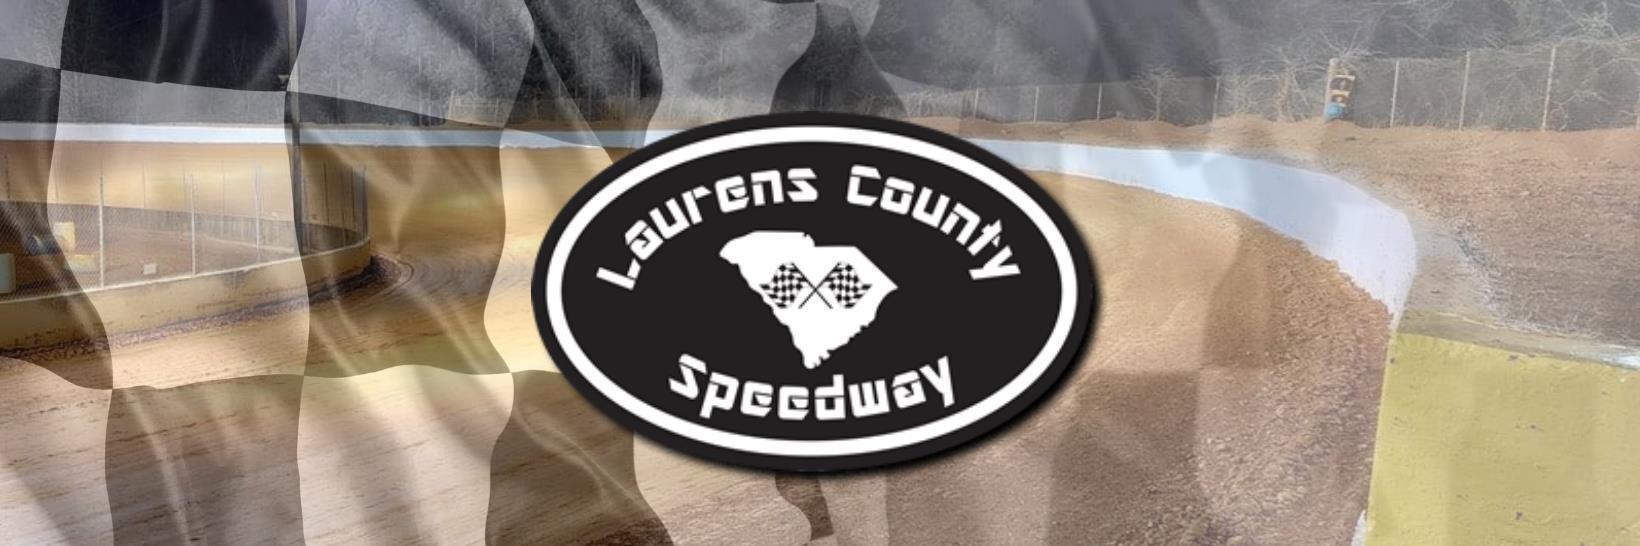 5/6/2017 - Laurens County Speedway